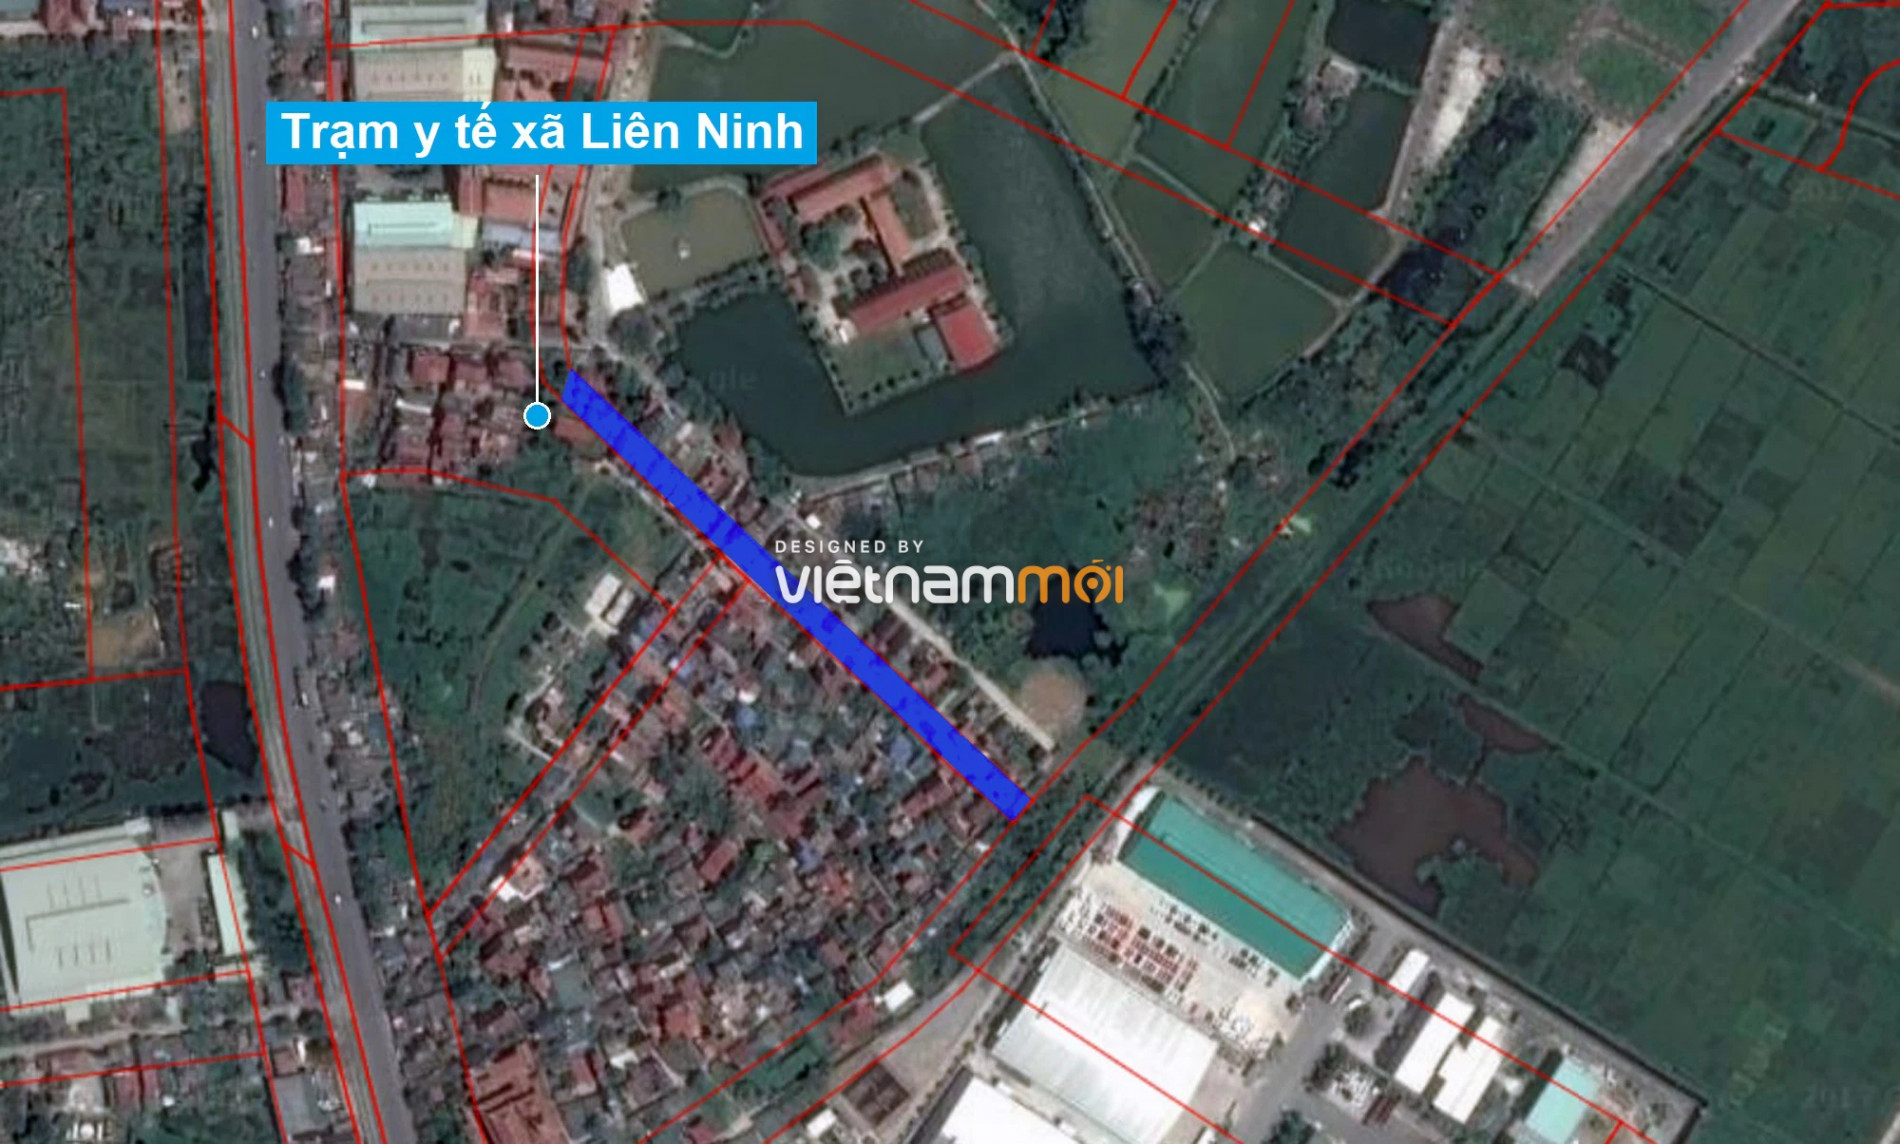 Những khu đất sắp thu hồi để mở đường ở xã Liên Ninh, Thanh Trì, Hà Nội (phần 9) - Ảnh 2.